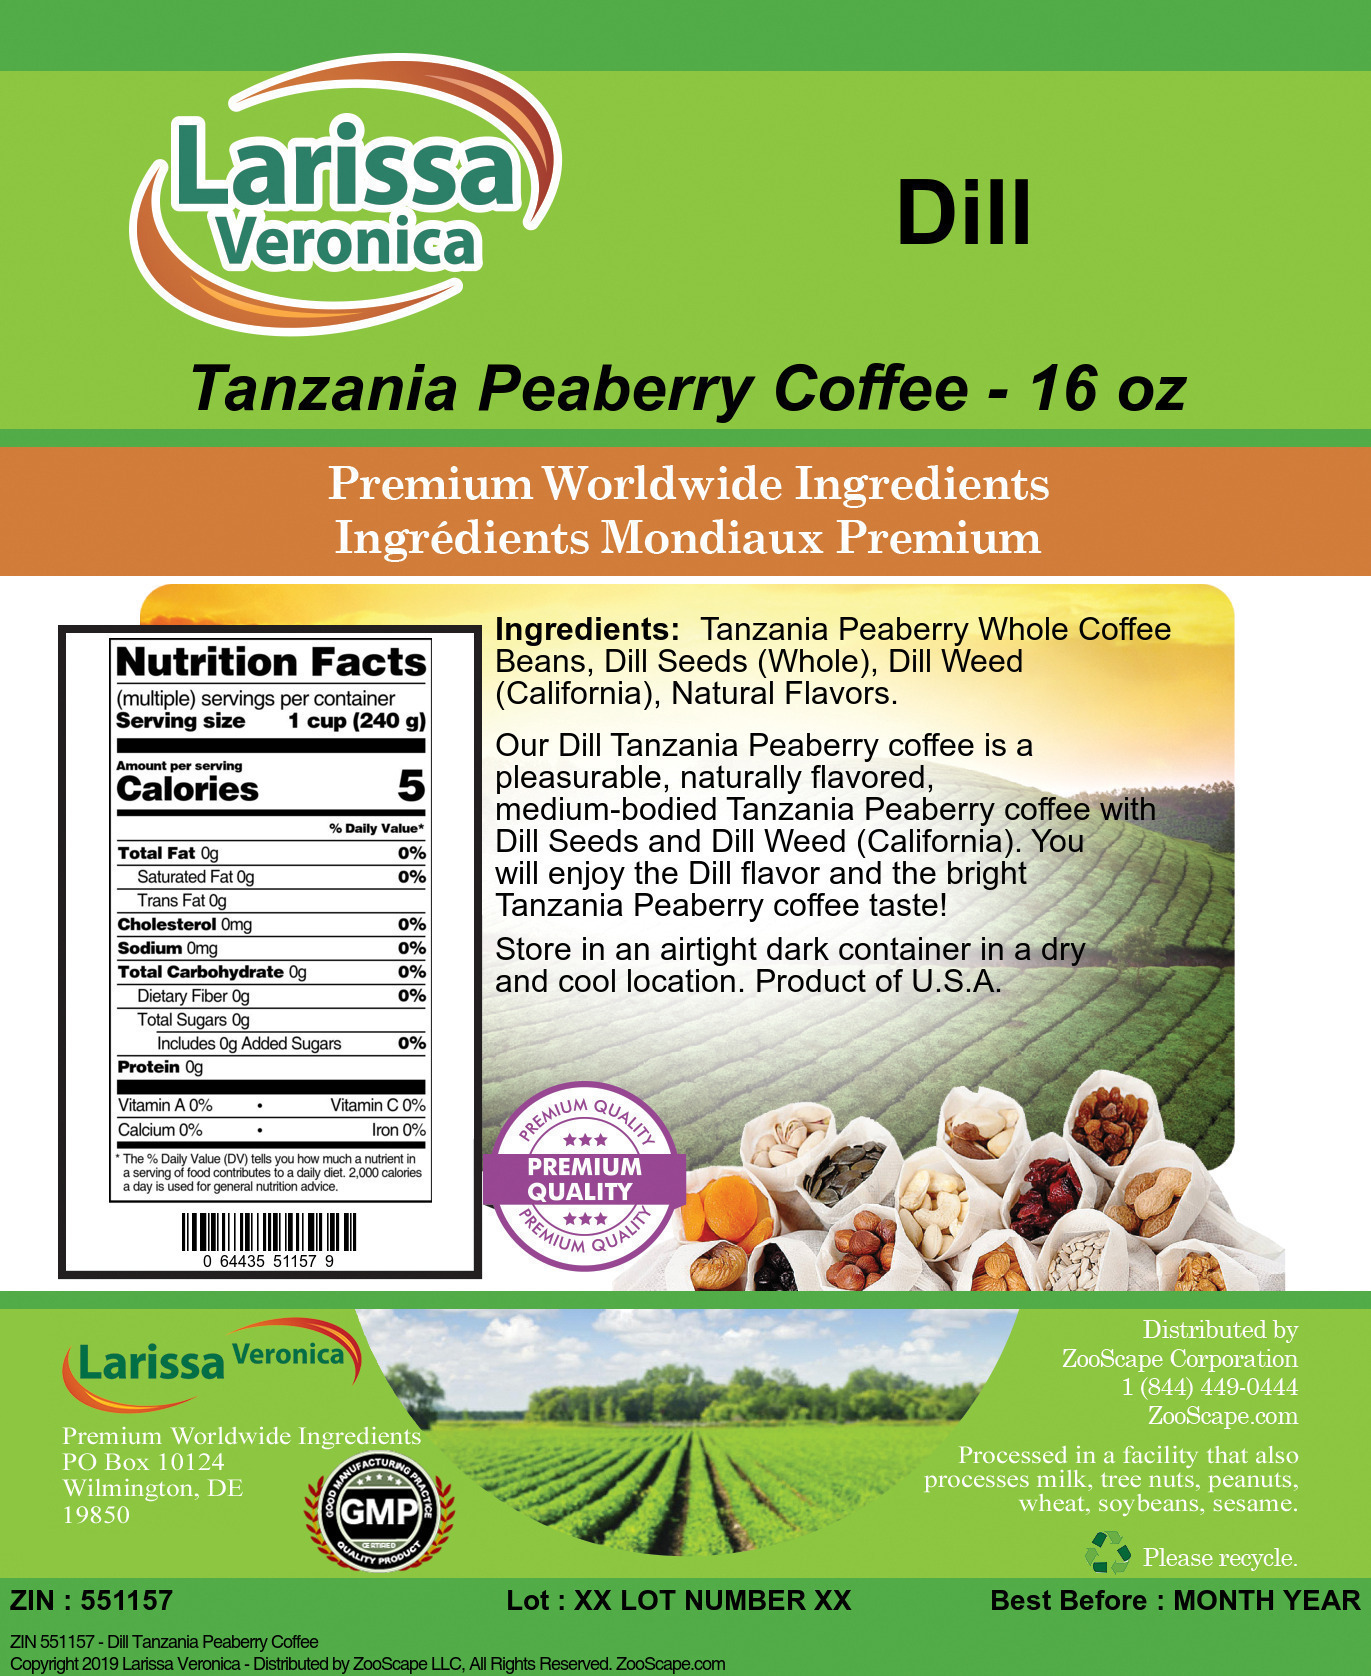 Dill Tanzania Peaberry Coffee - Label